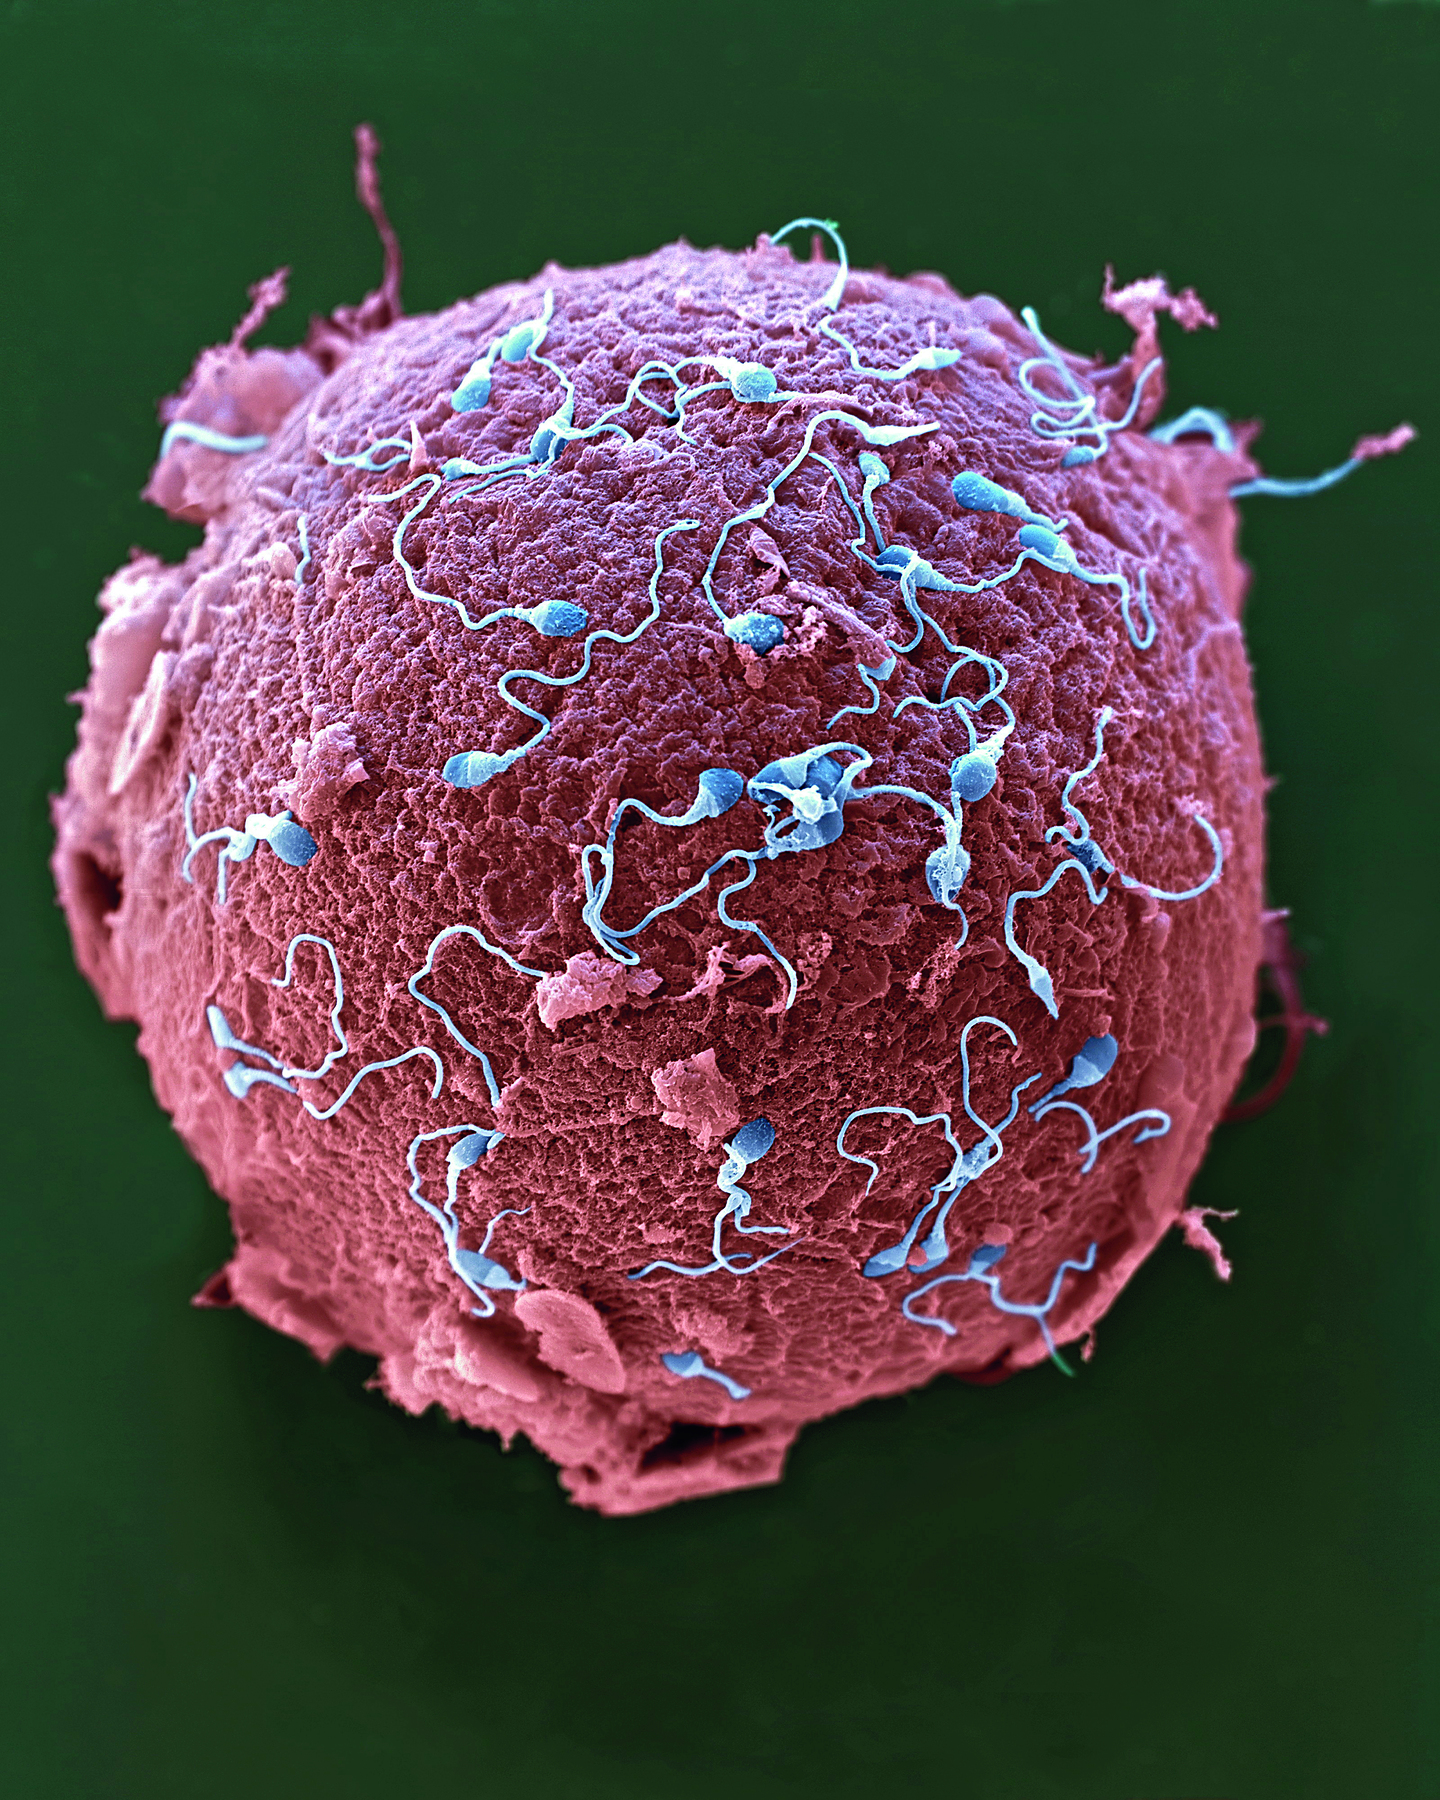 Fotografia. Estrutura circular e rosada com várias estruturas menores de coloração azul e formato arredondado que se prolonga em um filamento (espermatozoides) ao seu redor.